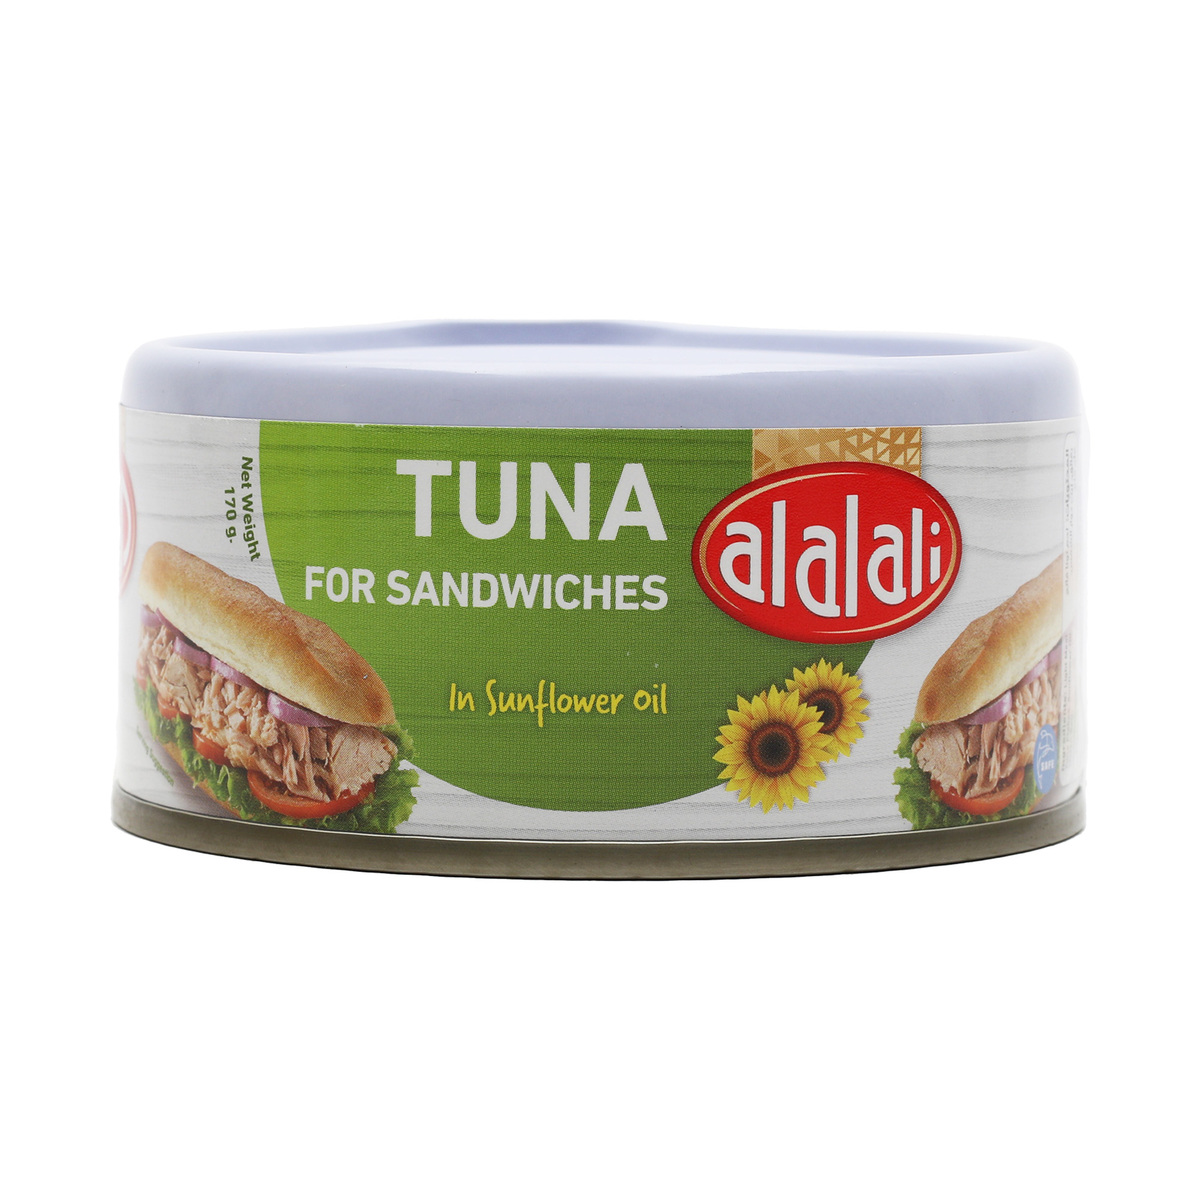 Al Alali Yellow Fin Tuna For Sandwiches In Sunflower Oil 170 g